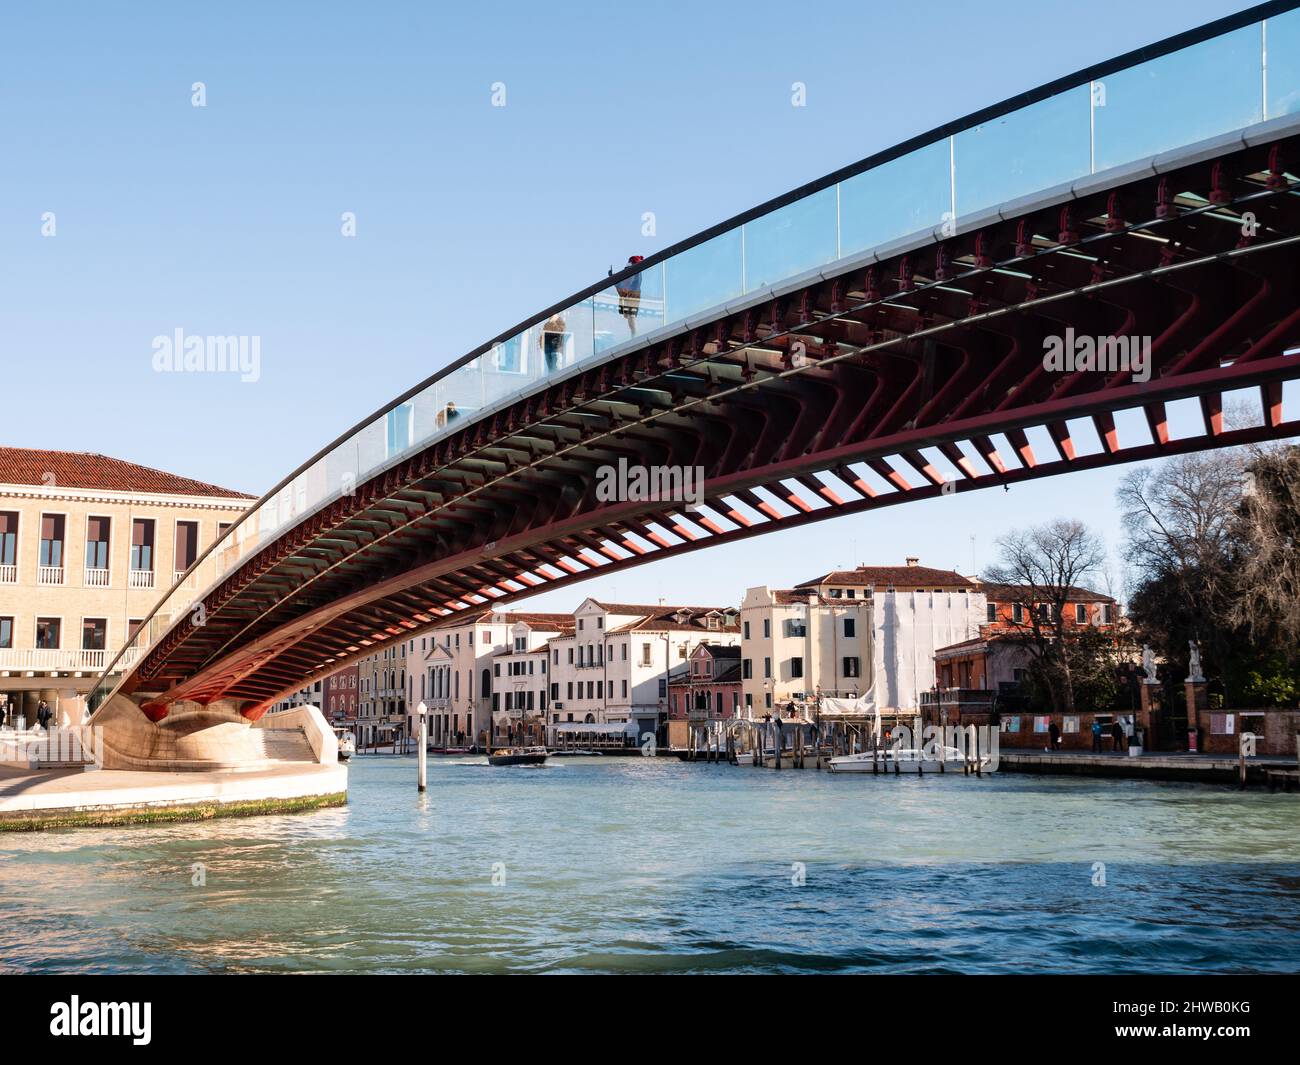 Venice, Italy - January 7 2022: Ponte della Costituzione or Constitution Bridge ove the Grand Canal designed by Santiago Calatrava. Stock Photo